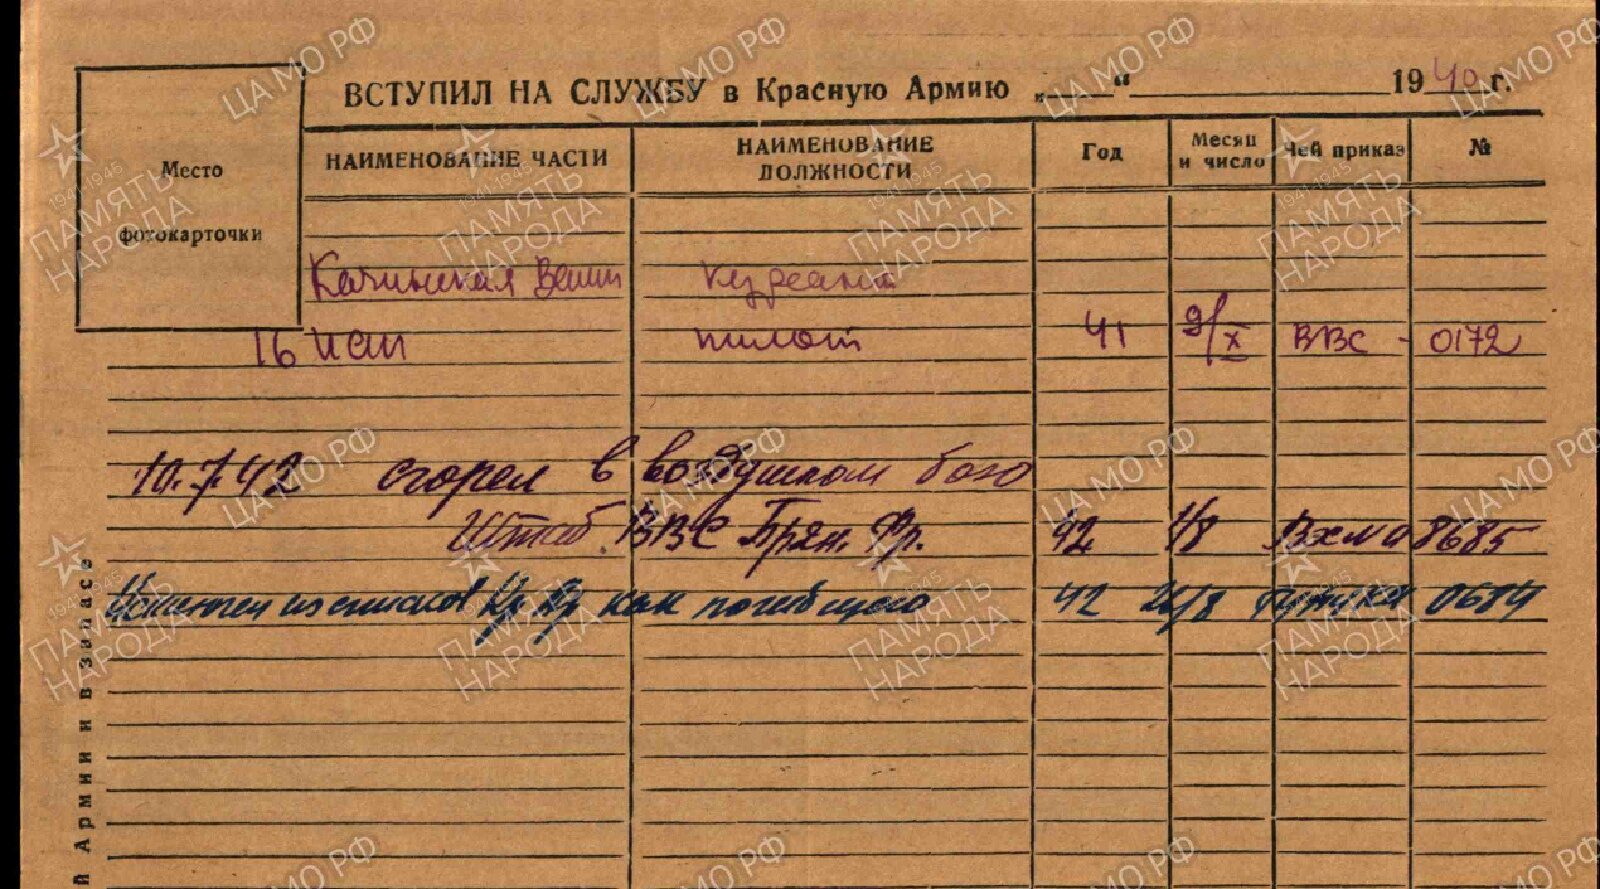 Учетно-послужная карточка В.М. Вахмистрова